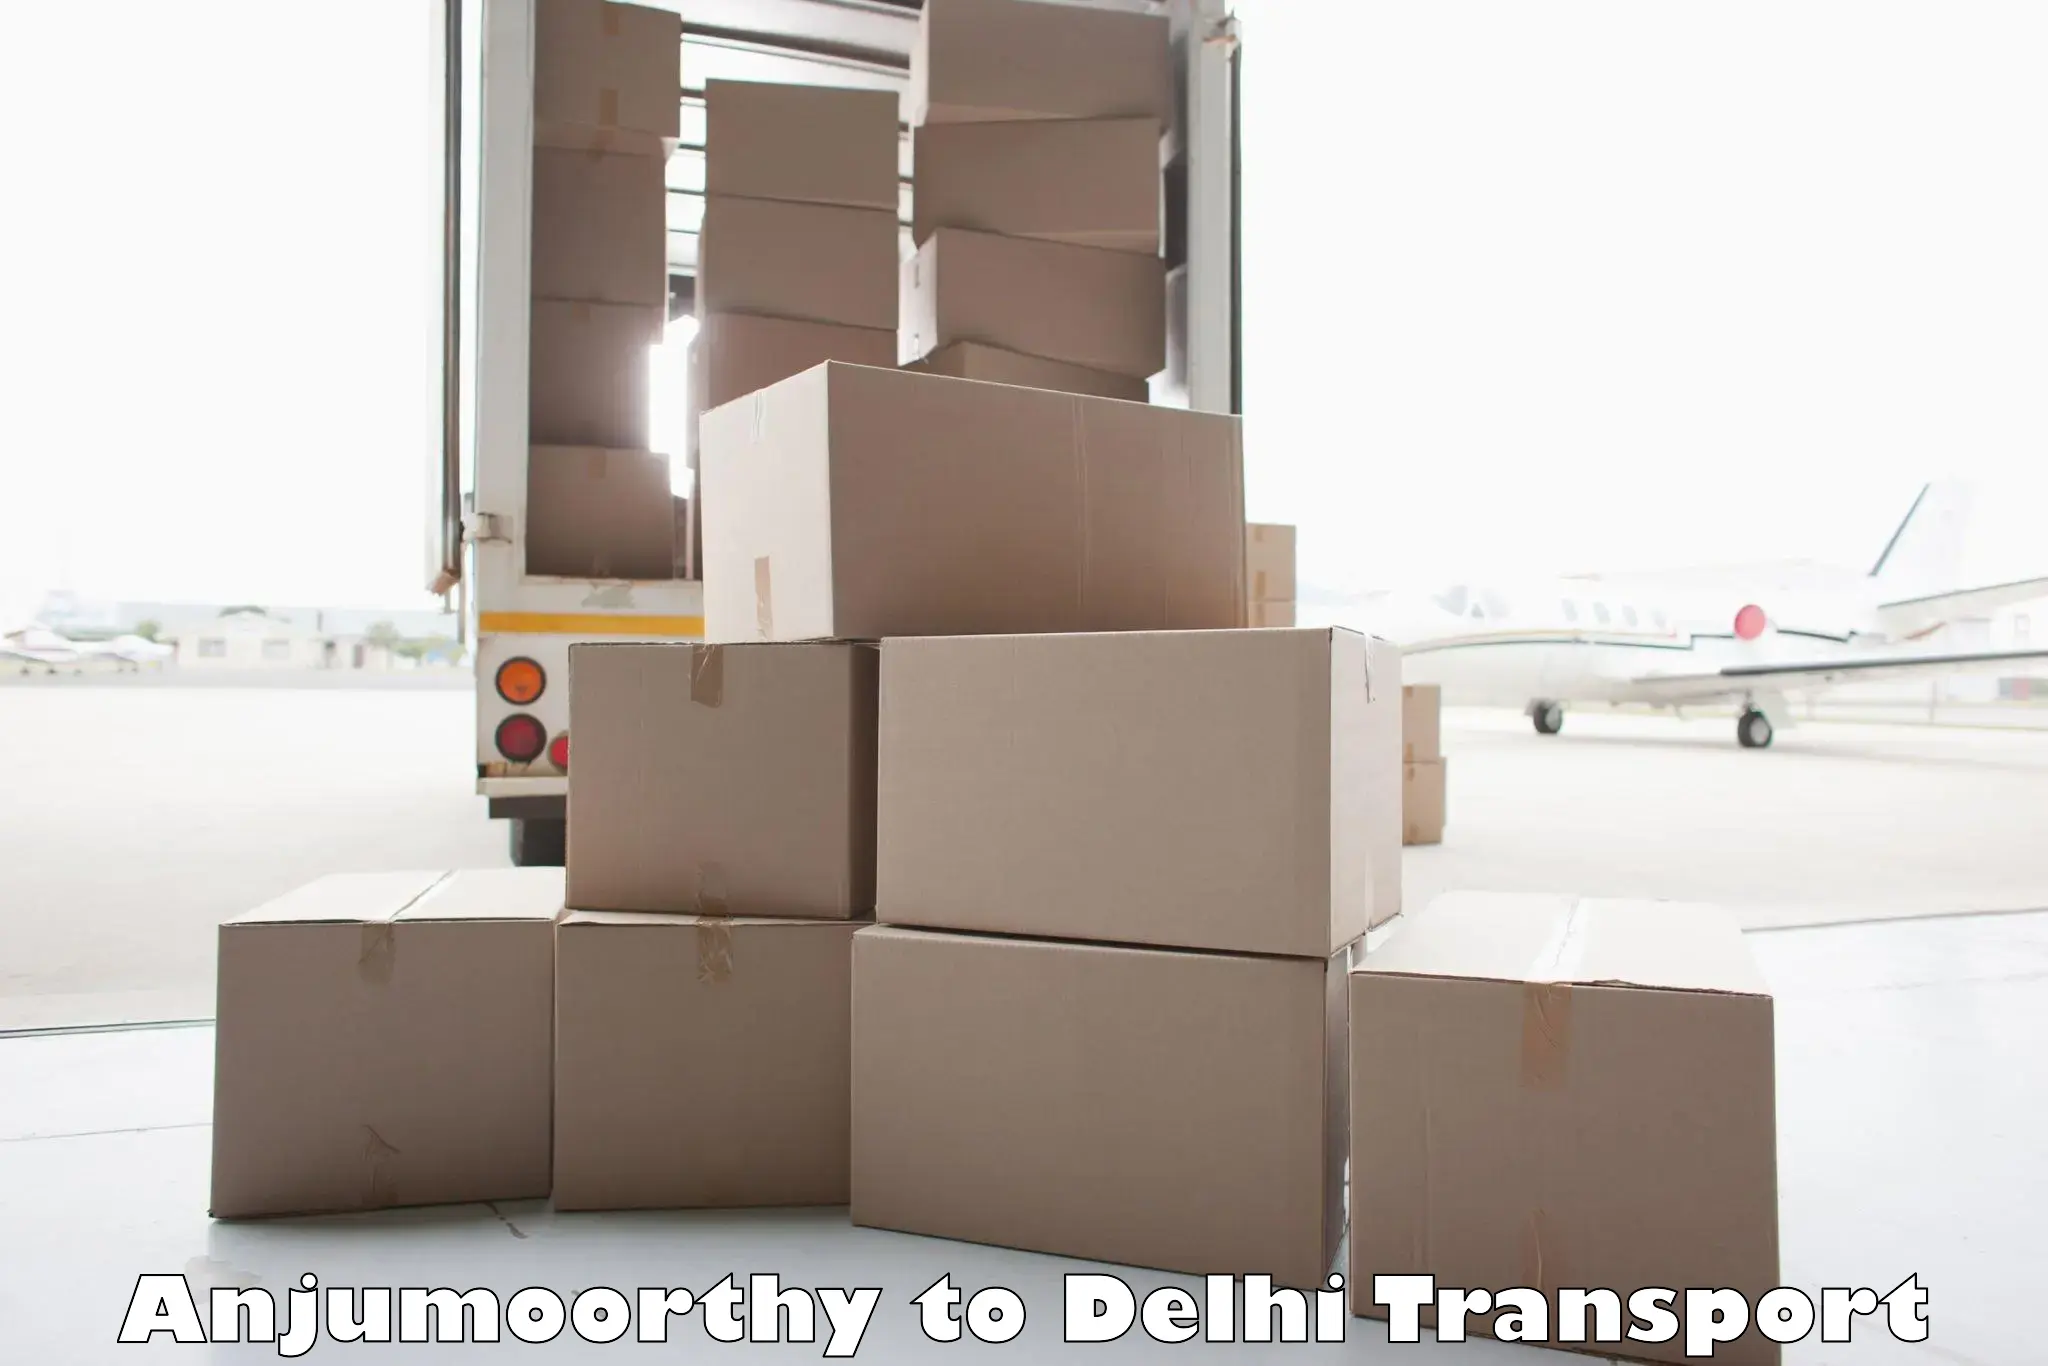 Daily transport service Anjumoorthy to Kalkaji